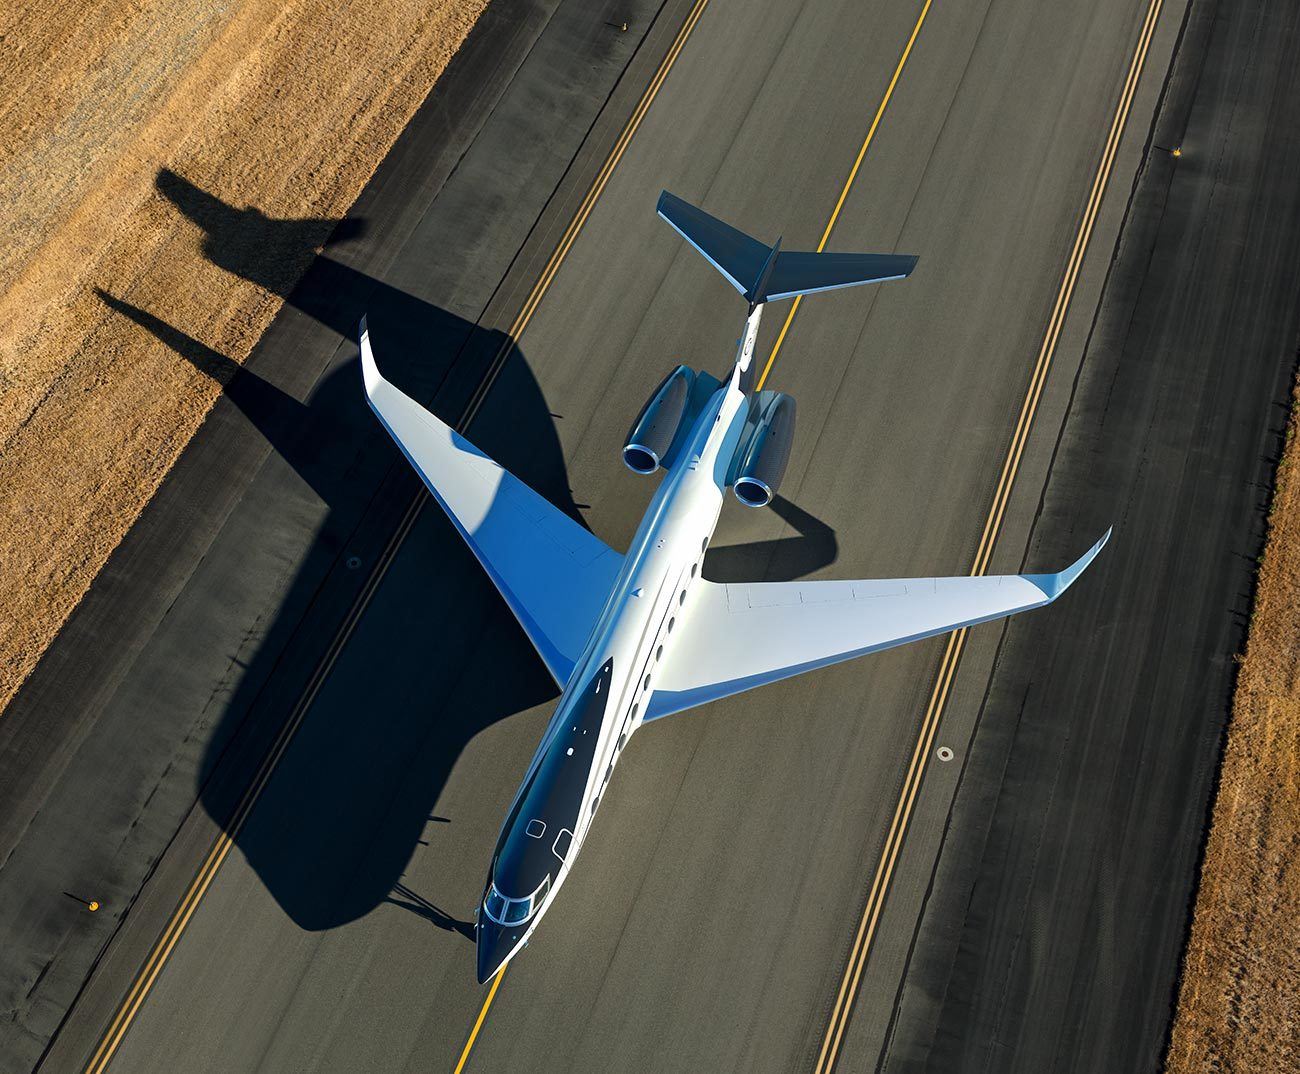 imagen 7 de Gulfstream presenta el G700, el jet más amplio y espectacular de cuantos han diseñado.